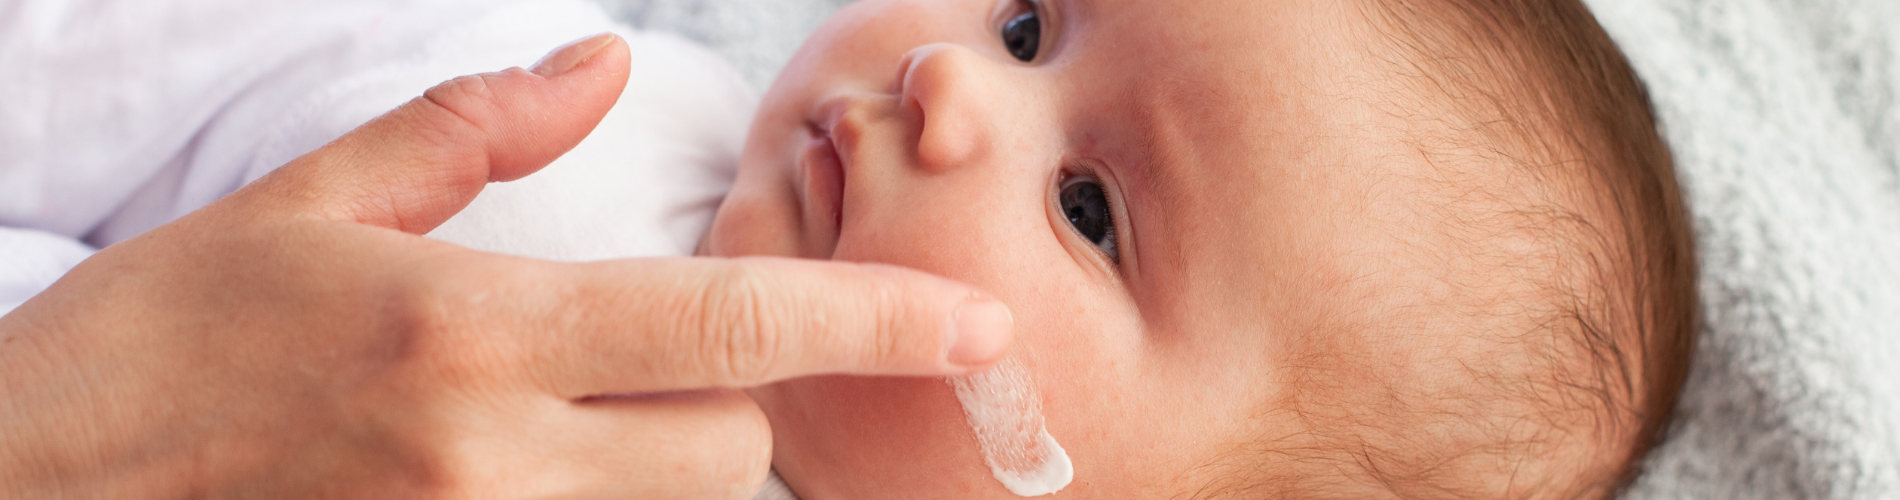 neugeborenes Baby, das sich hinlegt, während seine Mutter ihm mit dem Finger sanft Gesichtscreme aufträgt 